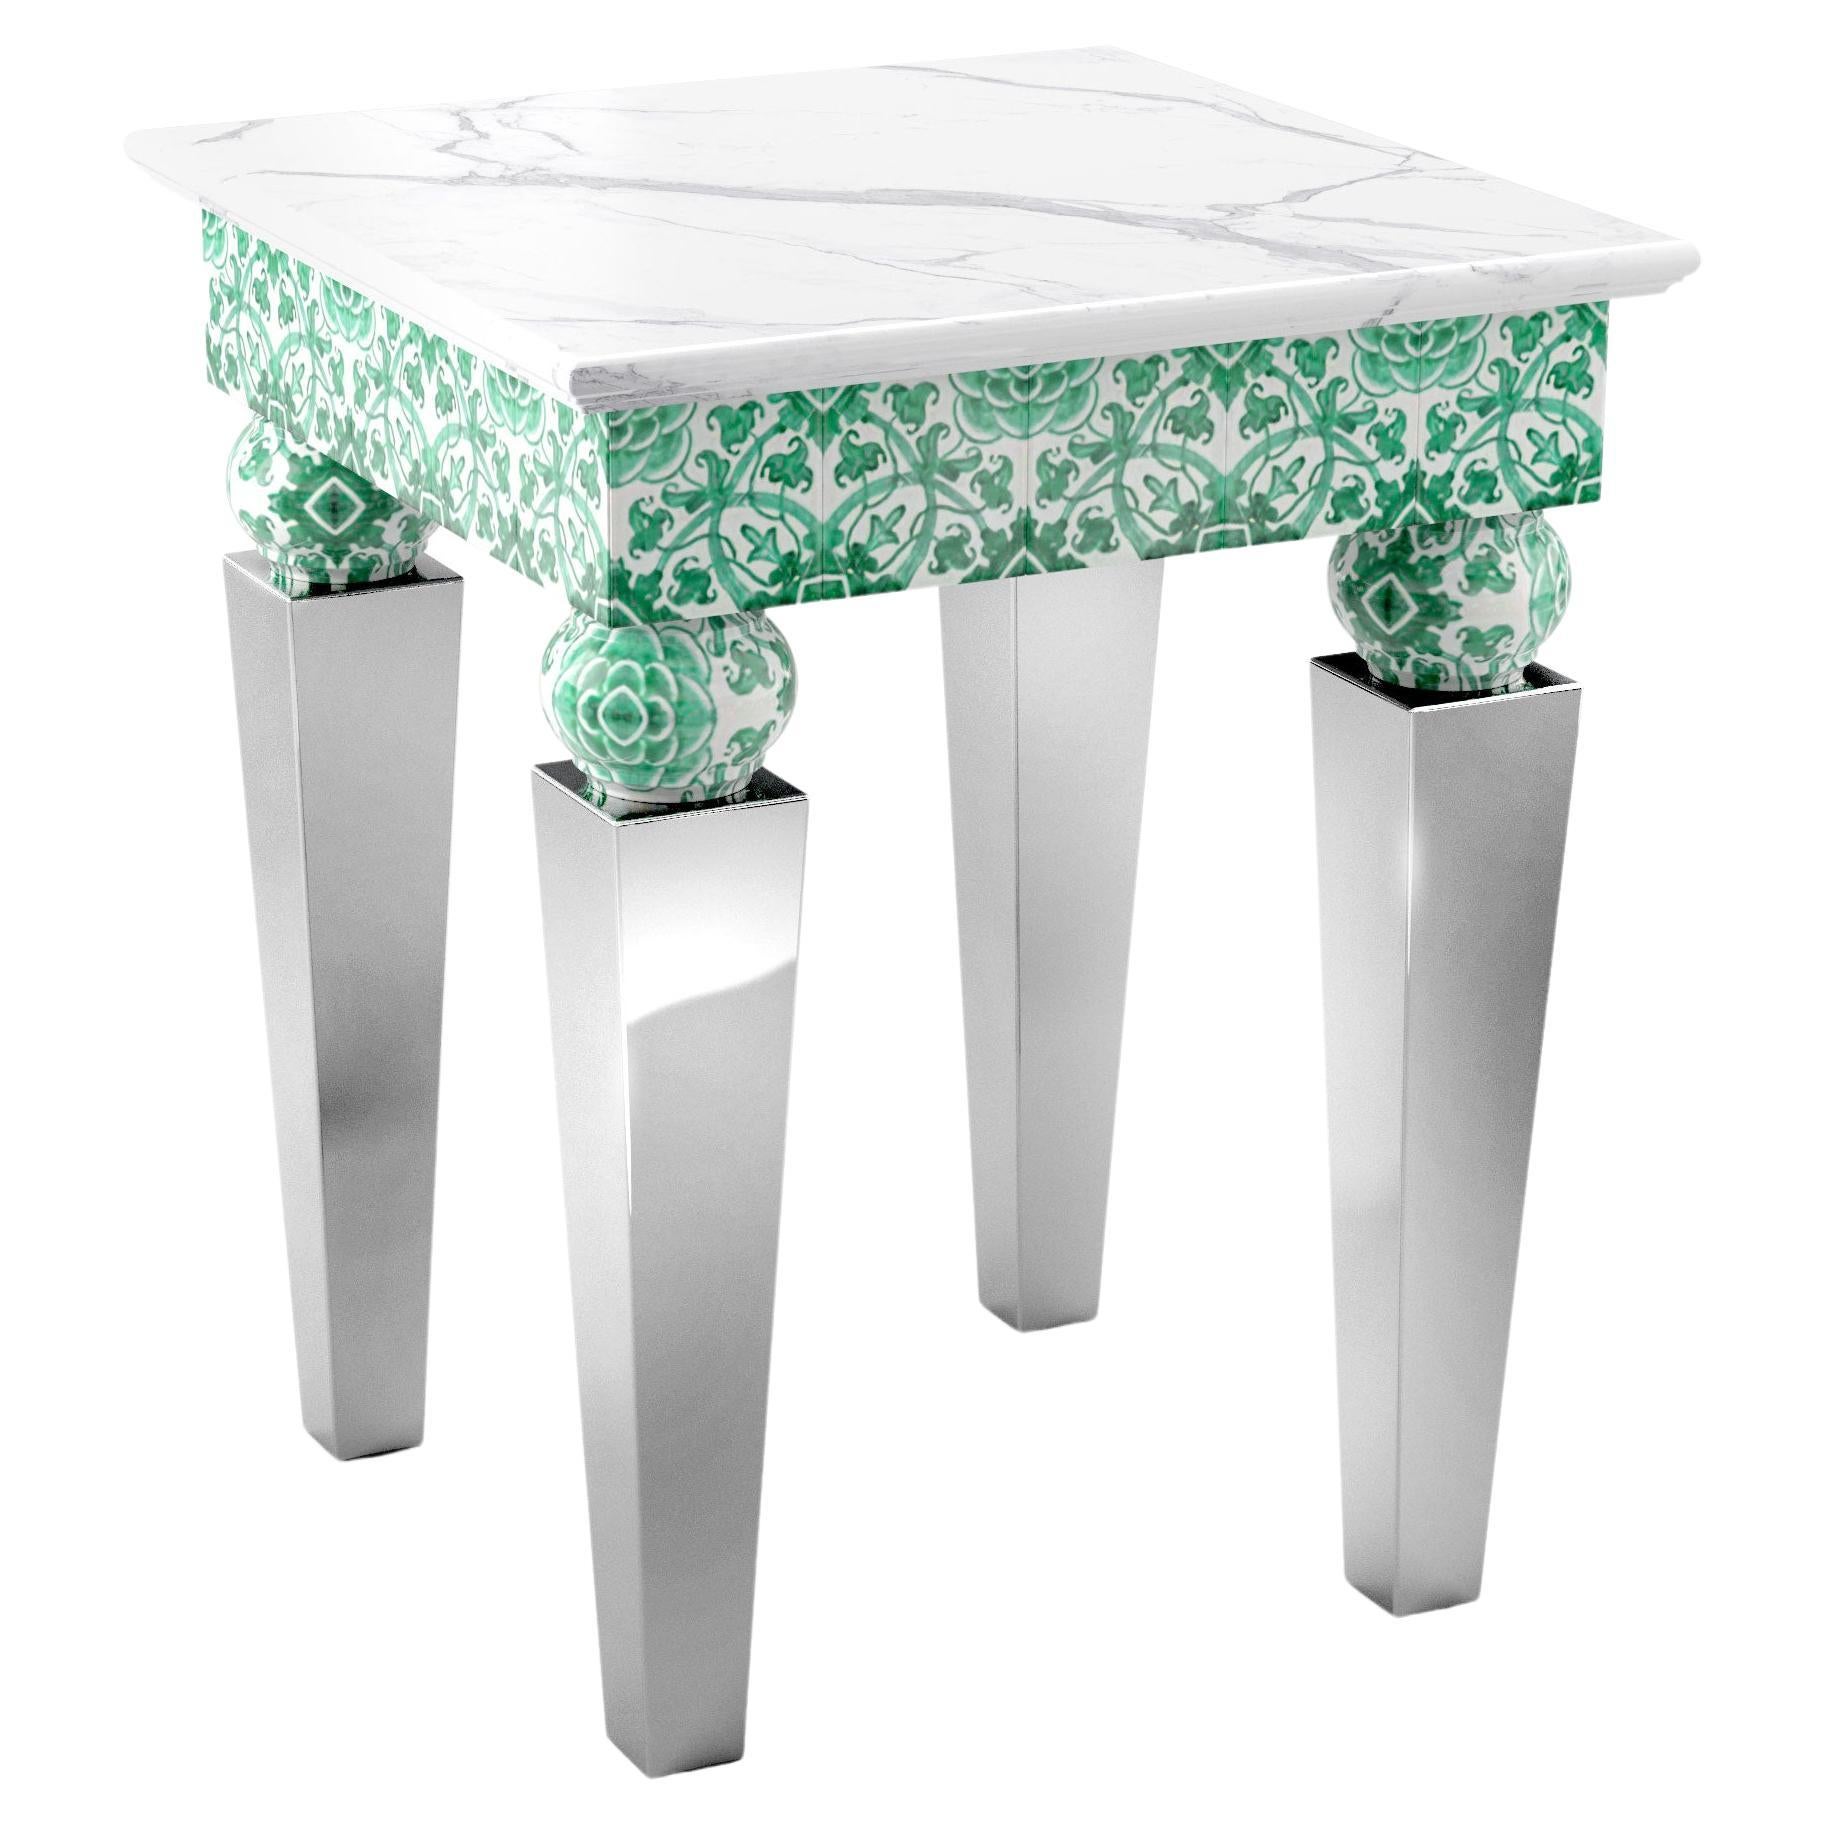 Table d'appoint avec plateau en marbre blanc et miroir, pieds en acier et carreaux de majolique verts, également en extérieur